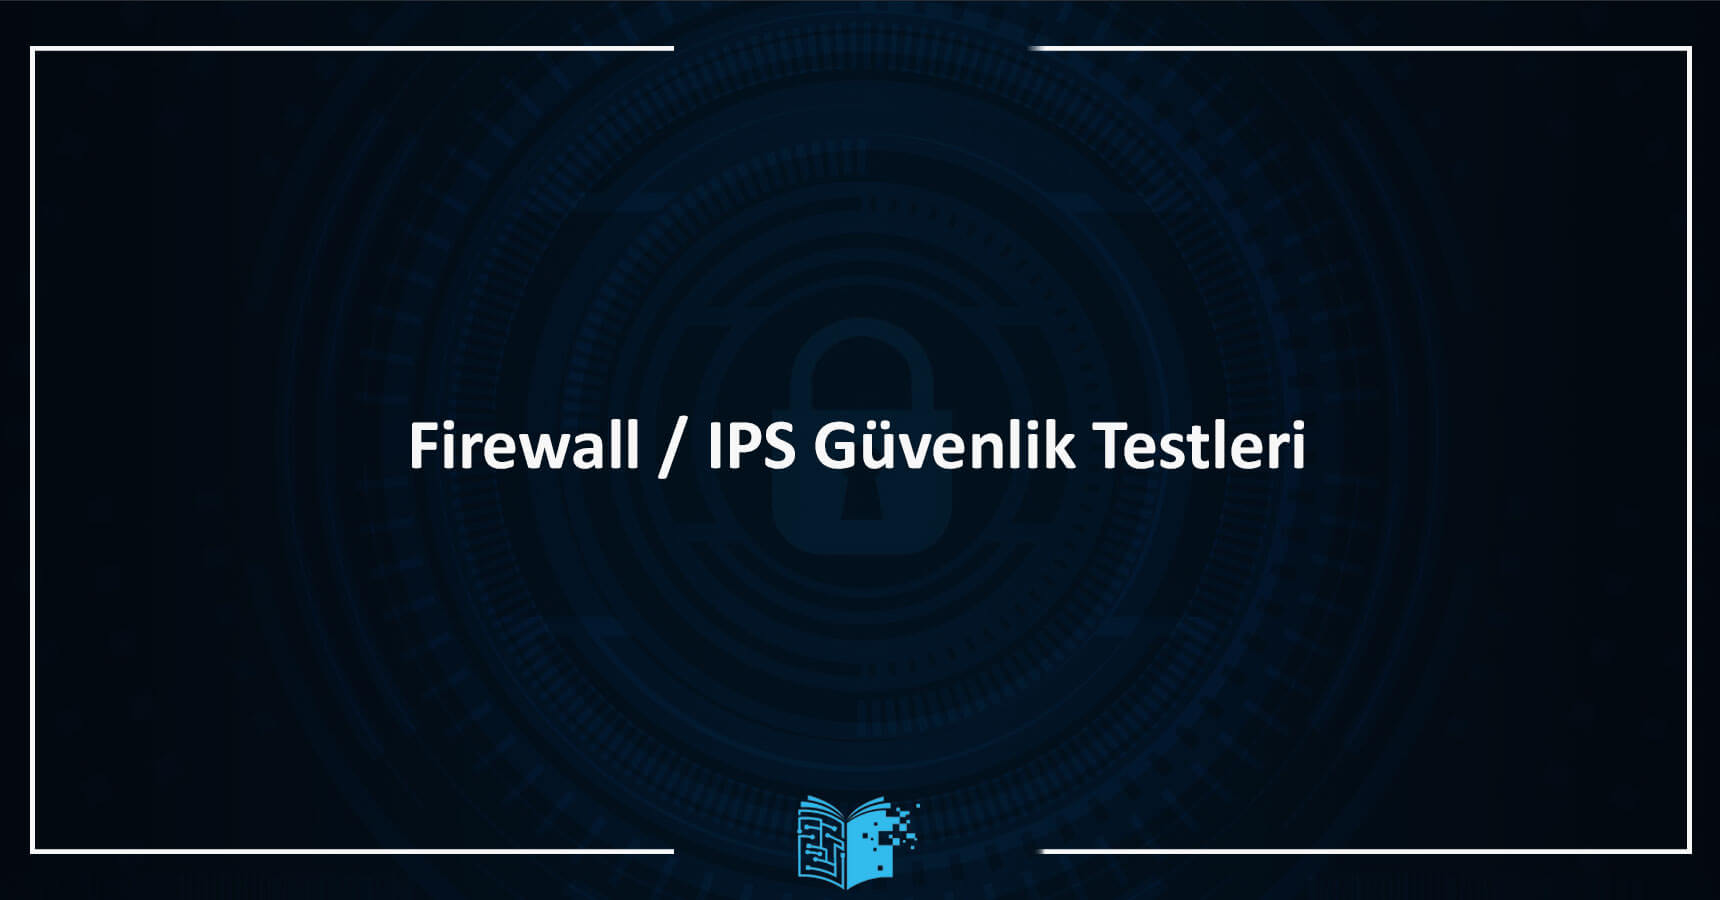 Firewall / IPS Güvenlik Testleri Eğitimi